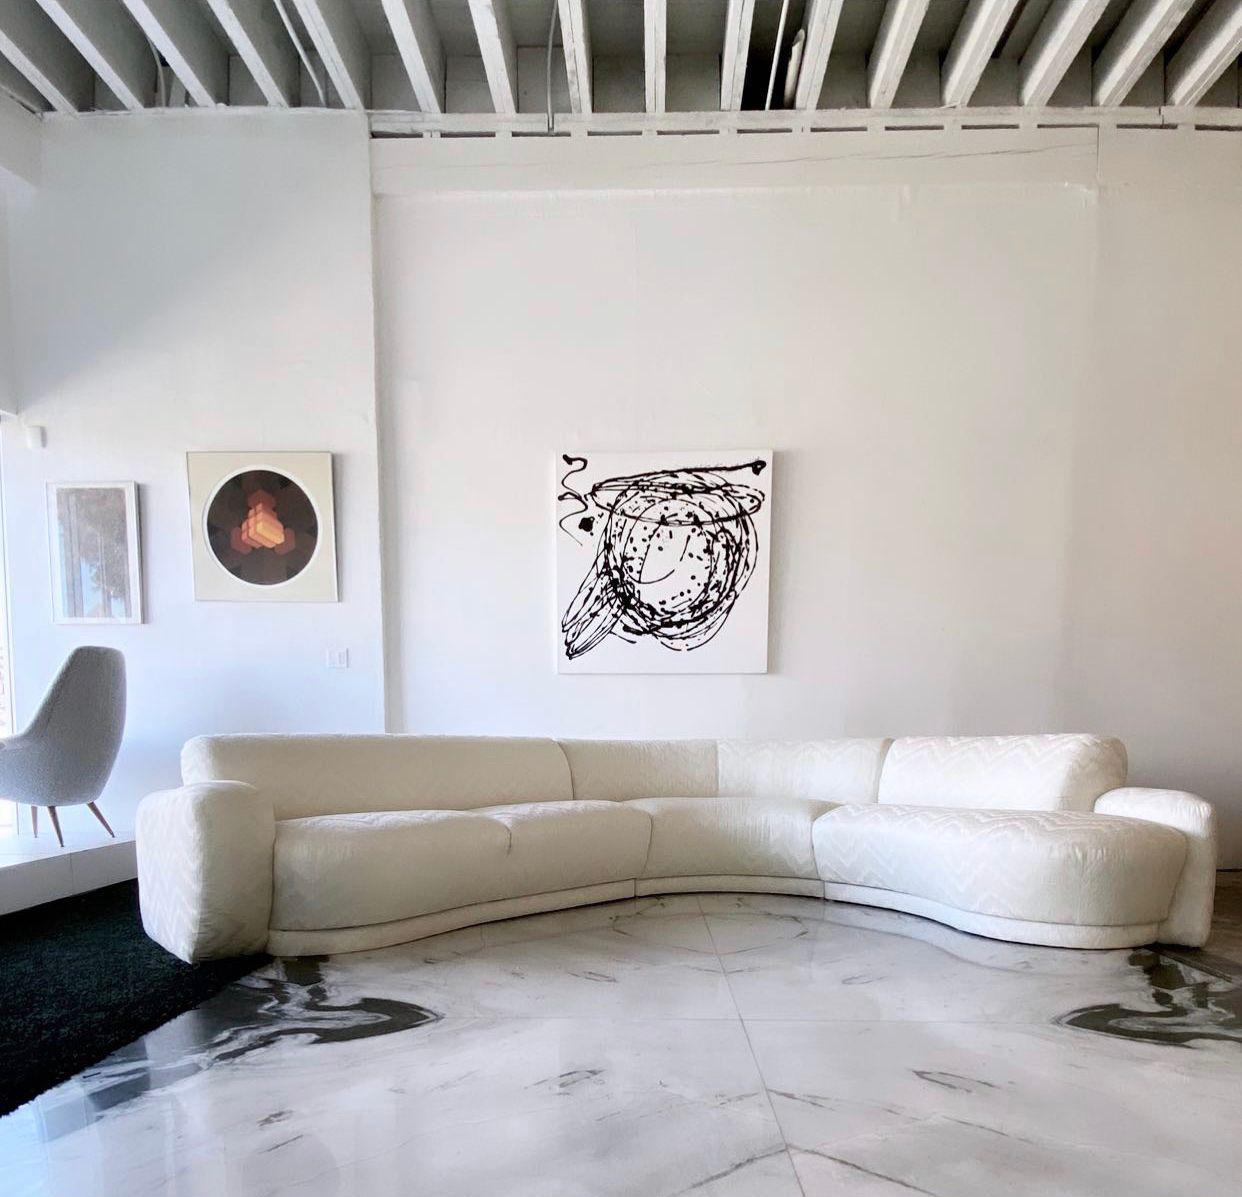 Dieses Sofa ist einfach umwerfend! Dieses weiße Sofa aus dem Jahr 1994 hat einen wunderschönen Flammenstich-Bezug und ist gleichermaßen bequem und schön. Das Sofa ist 3-teilig und hat ein modernes, fast Art-déco-artiges Design.

Der geschwungene